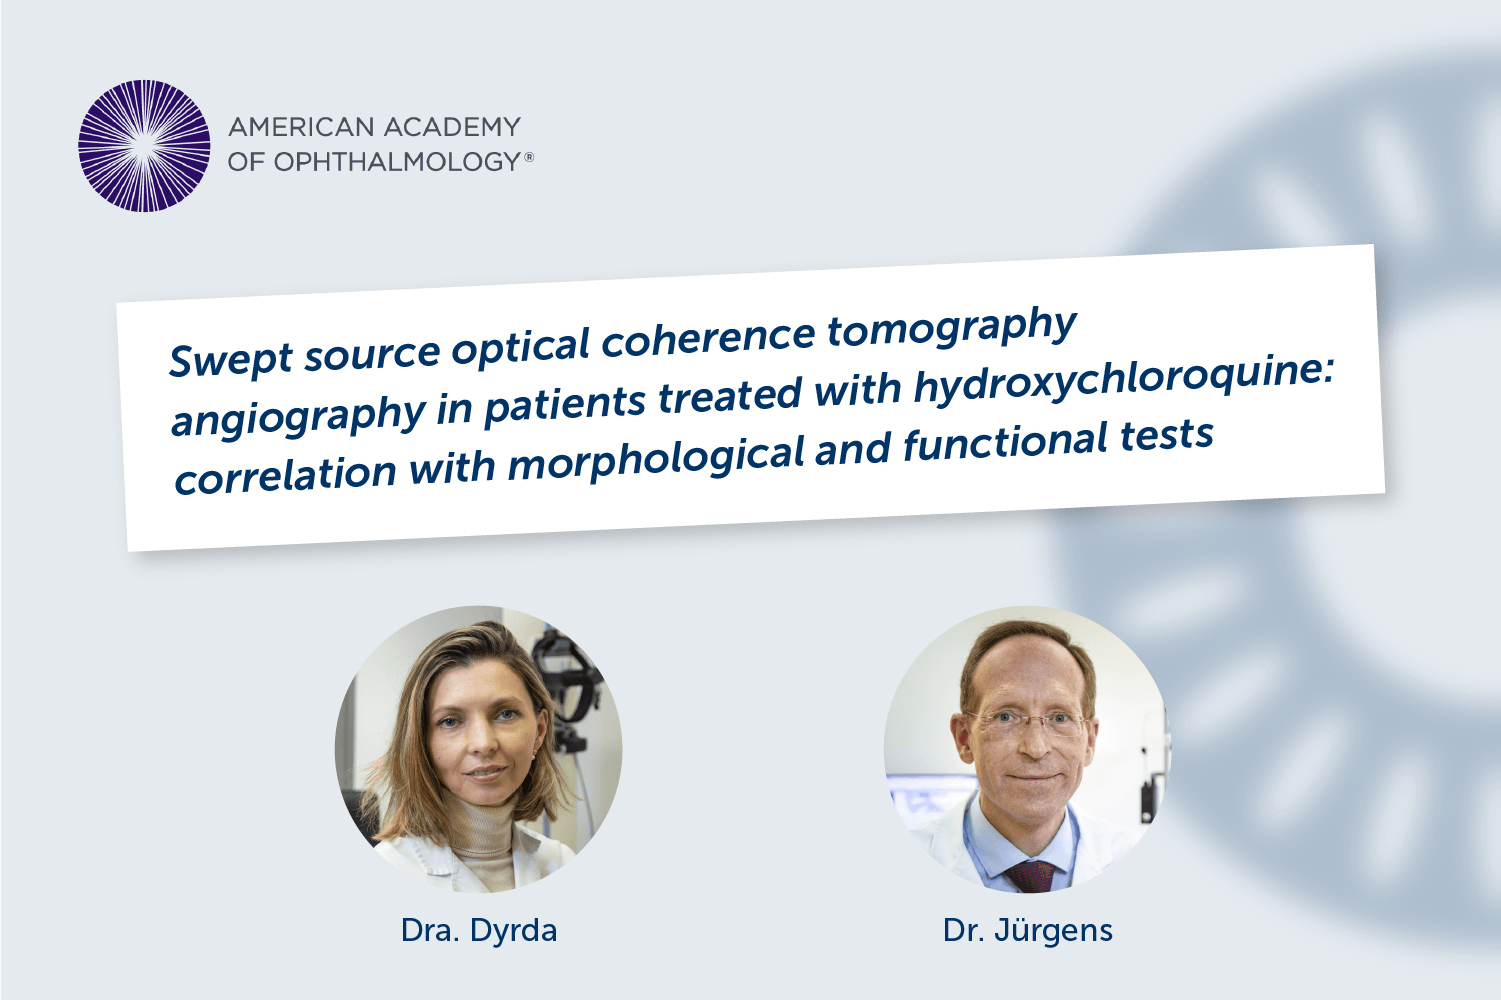 Un article en el qual han participat la Dra. Dyrda i el Dr. Jürgens és destacat per l’Acadèmia Americana d’Oftalmologia